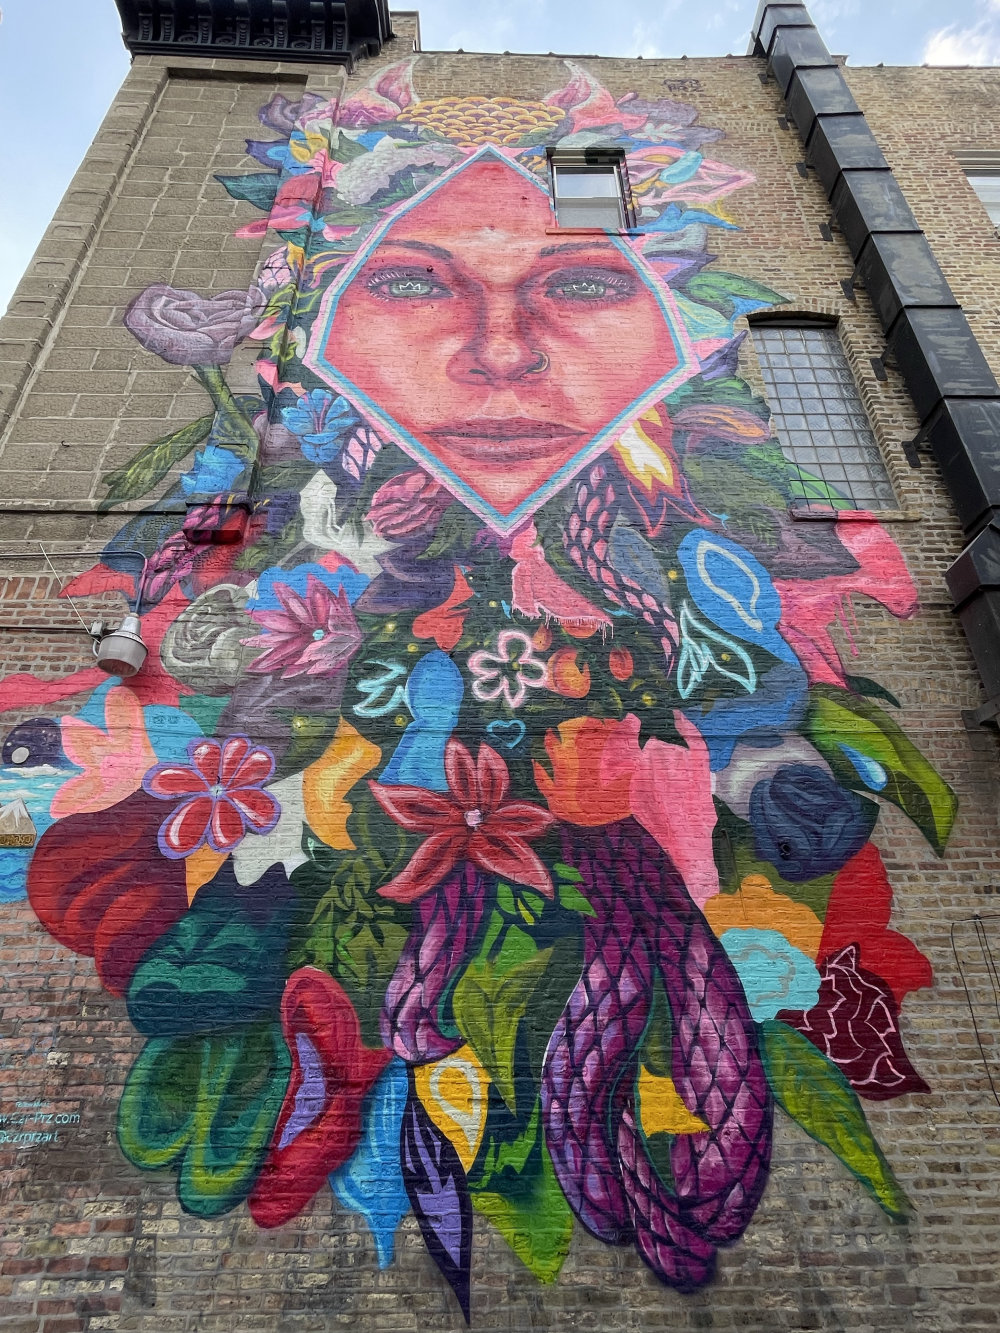 mural in Chicago by artist Czr Prz.